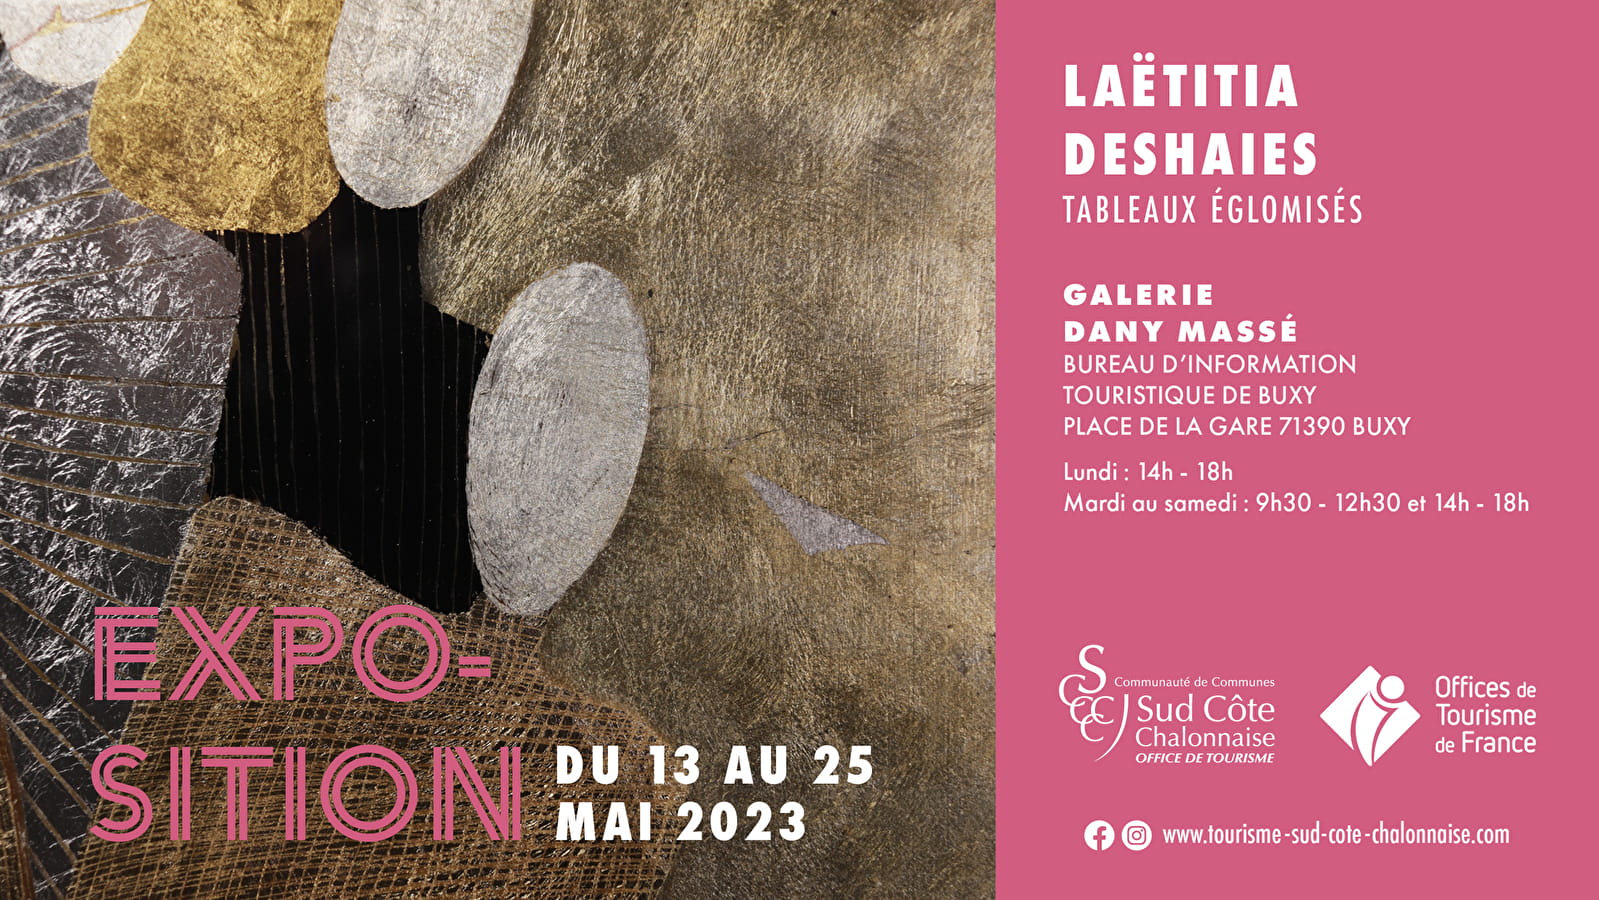 Exhibition by Laëtitia Deshaies